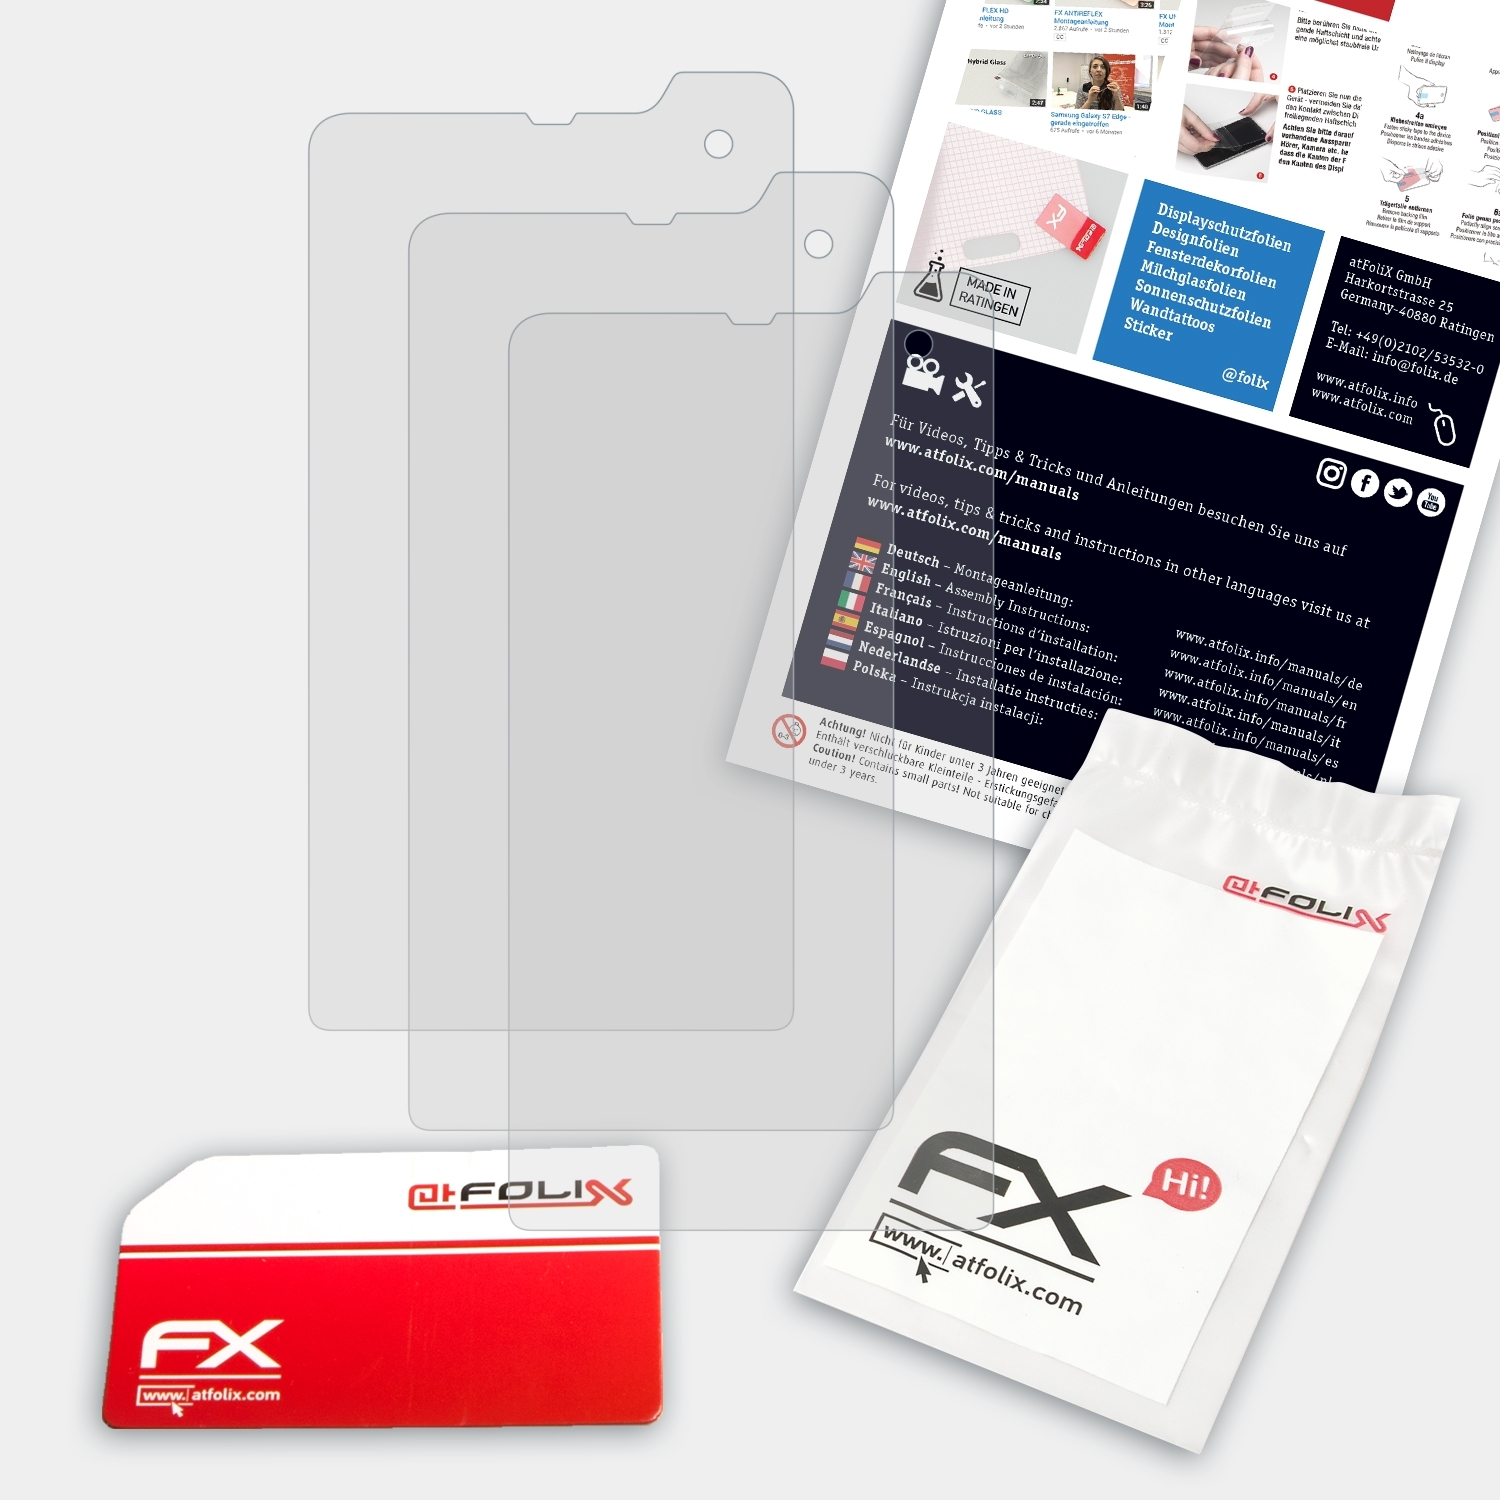 ATFOLIX XP8) FX-Antireflex Sonim 3x Displayschutz(für